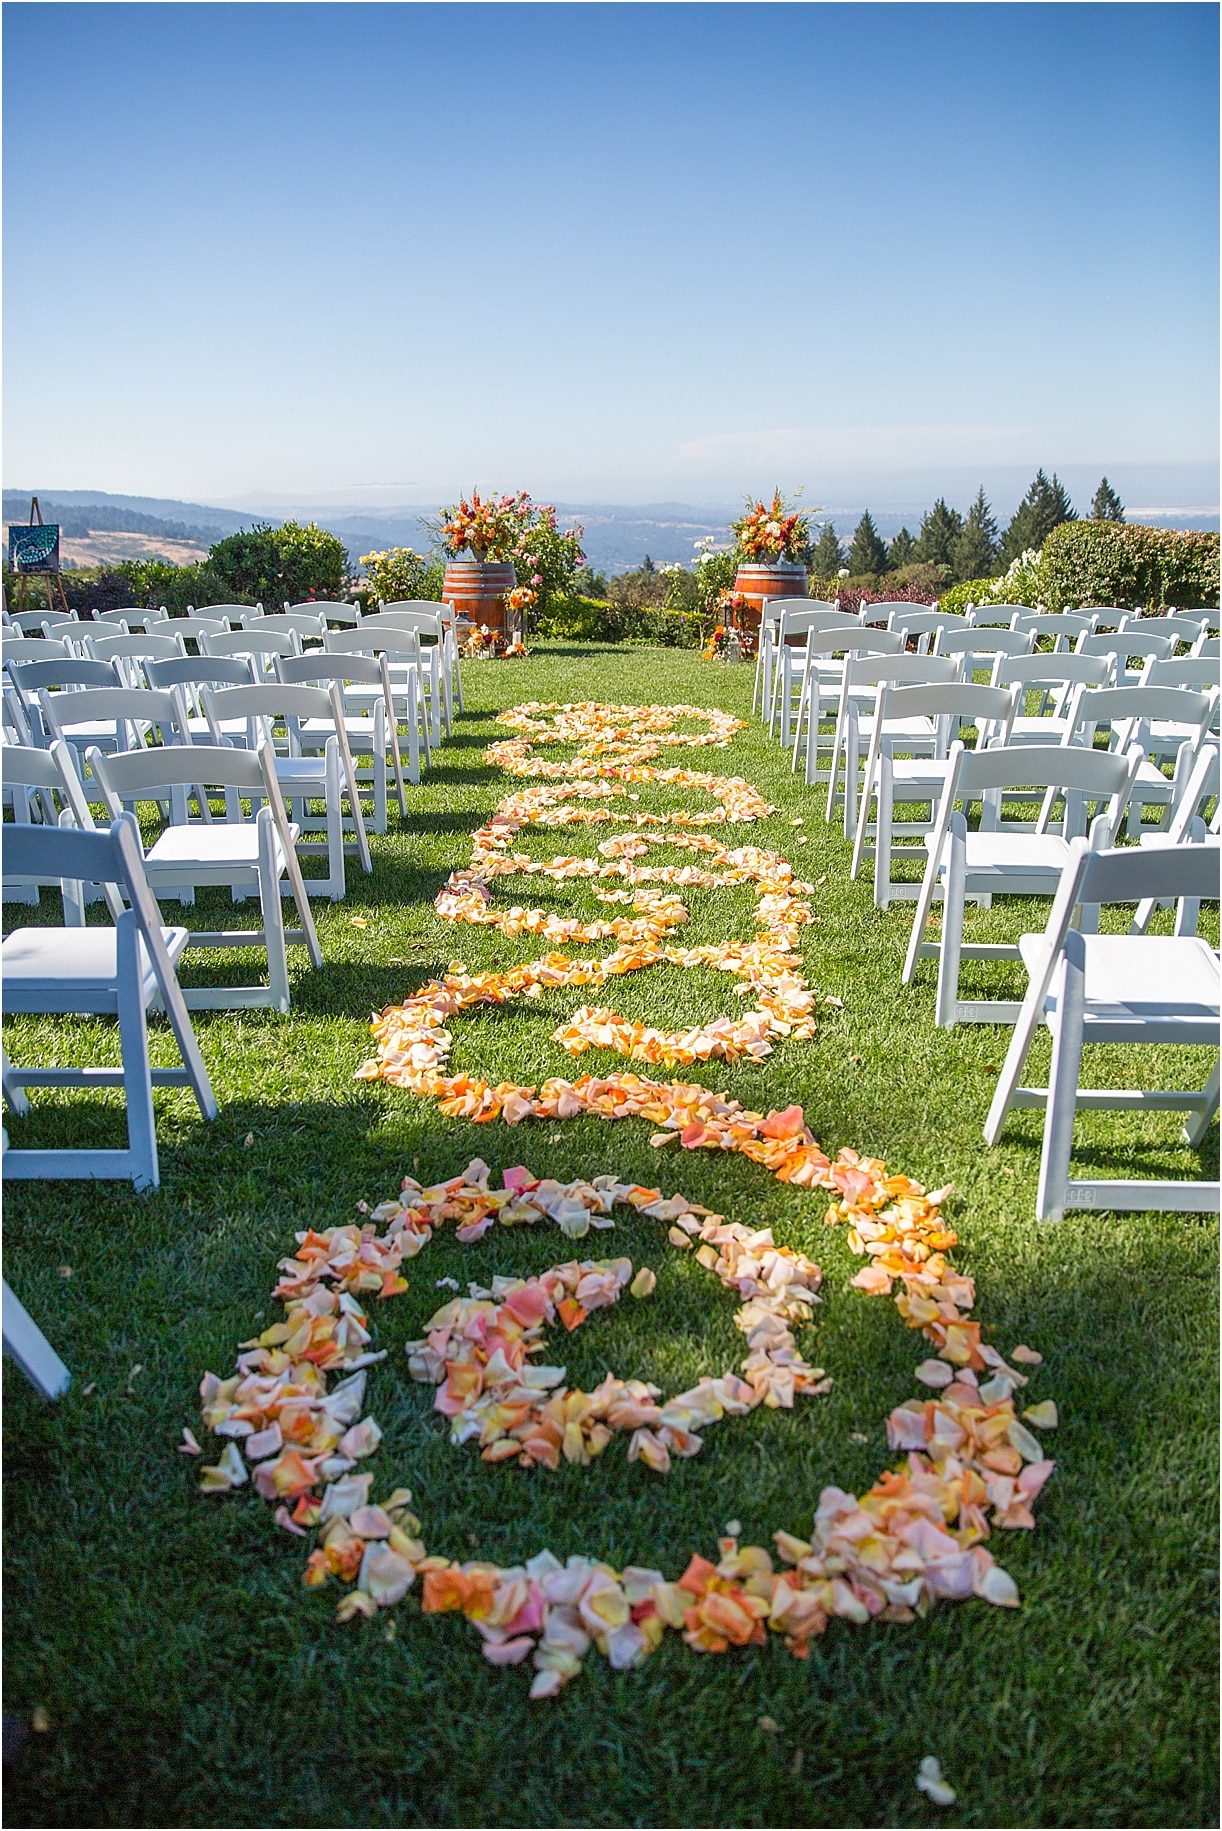 California Winery Wedding as seen on Hill City Bride Virginia Wedding Blog - San Mateo County Silicon Valley - Thomas Fogarty